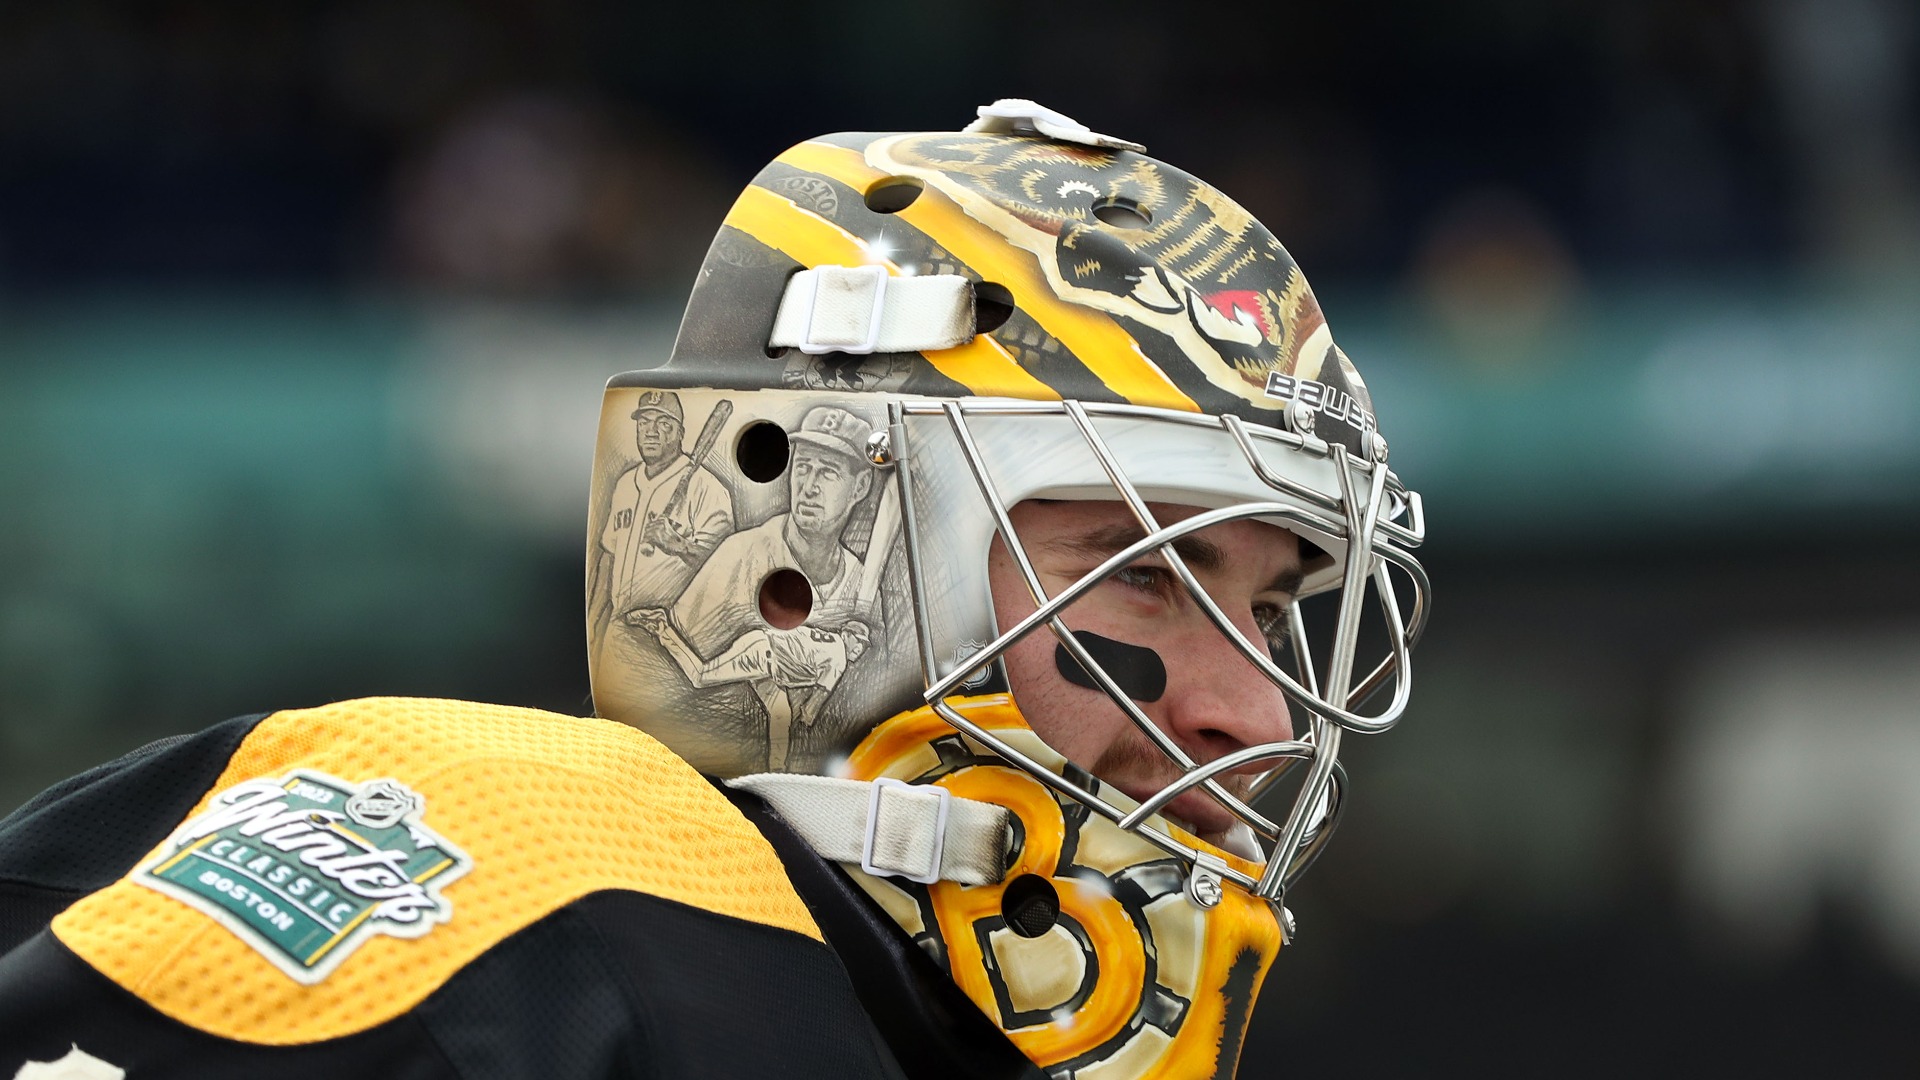 Bruins goalie is trending over new mask